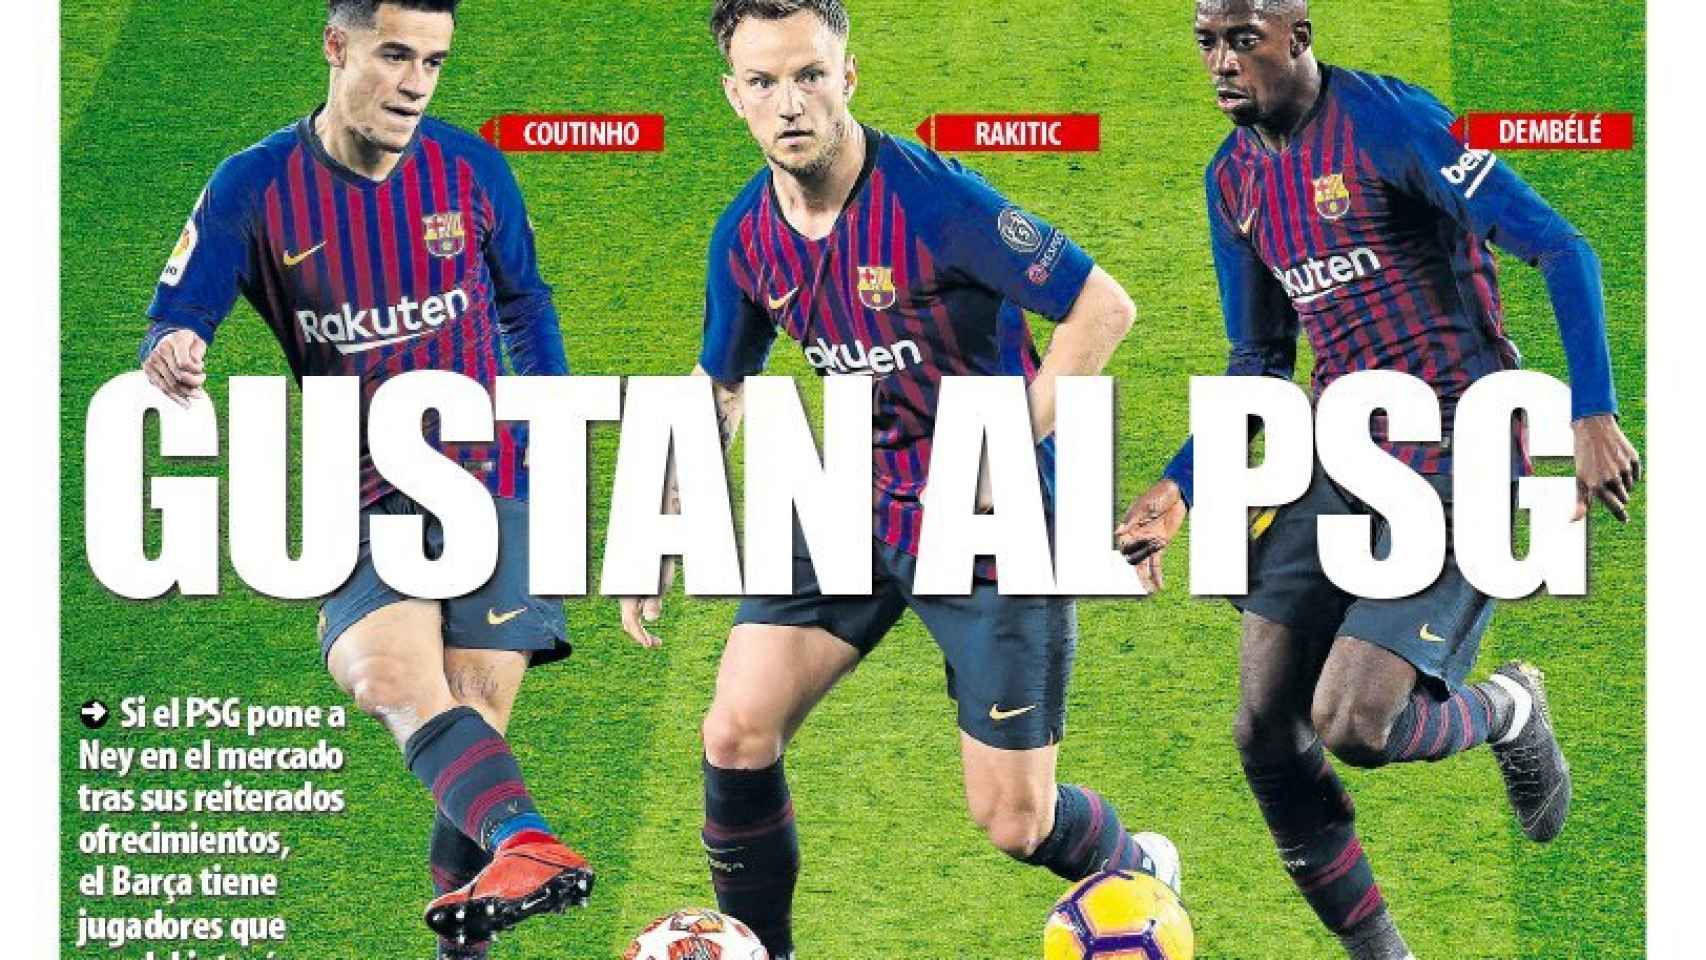 La portada del diario Mundo Deportivo (03/06/2019)